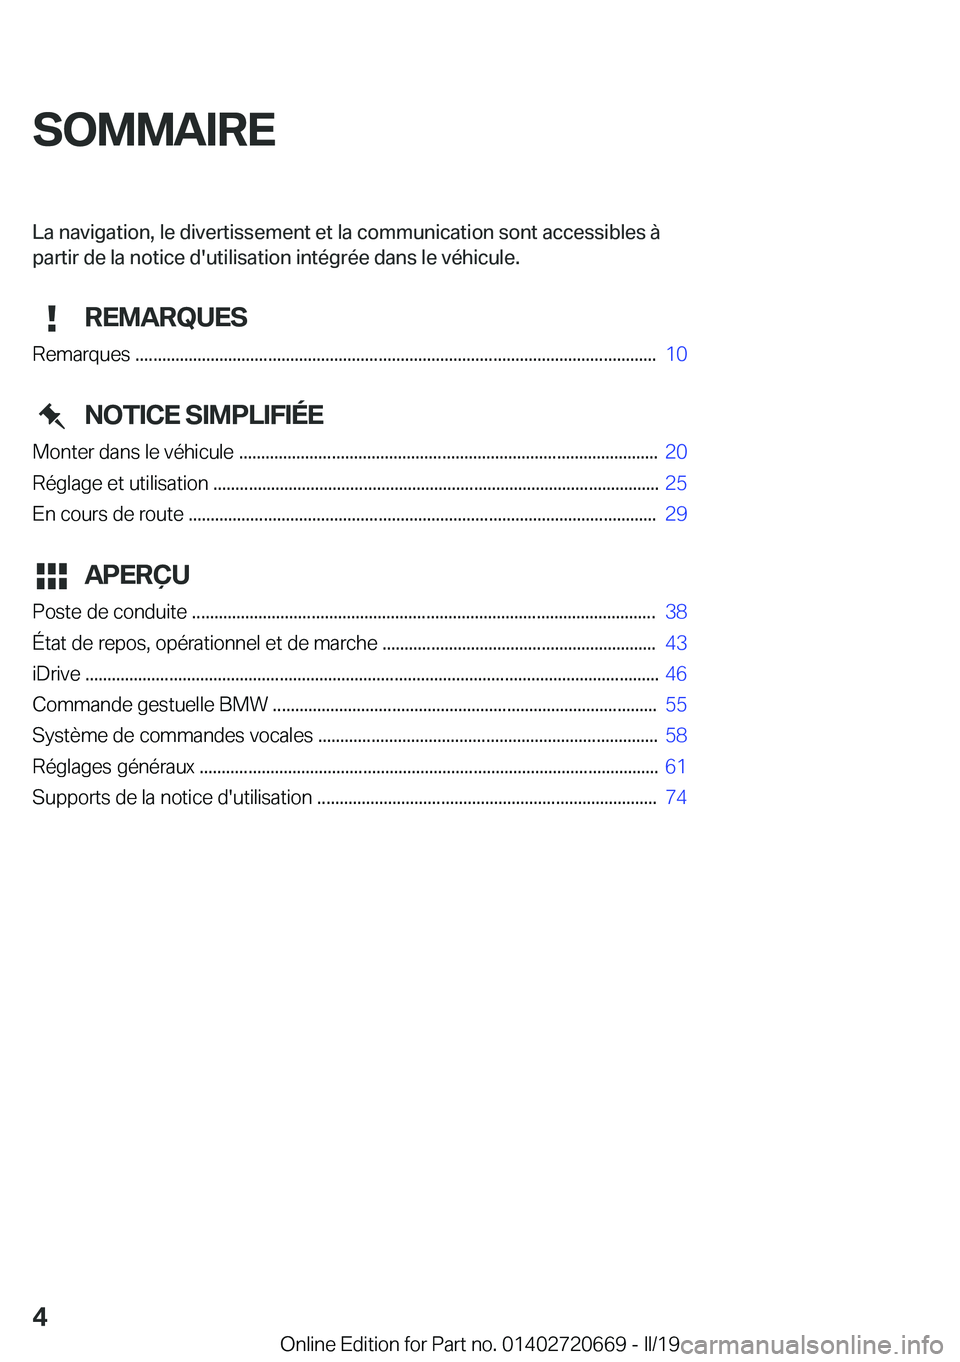 BMW M5 2019  Notices Demploi (in French) �S�O�M�M�A�I�R�E�L�a��n�a�v�i�g�a�t�i�o�n�,��l�e��d�i�v�e�r�t�i�s�s�e�m�e�n�t��e�t��l�a��c�o�m�m�u�n�i�c�a�t�i�o�n��s�o�n�t��a�c�c�e�s�s�i�b�l�e�s��